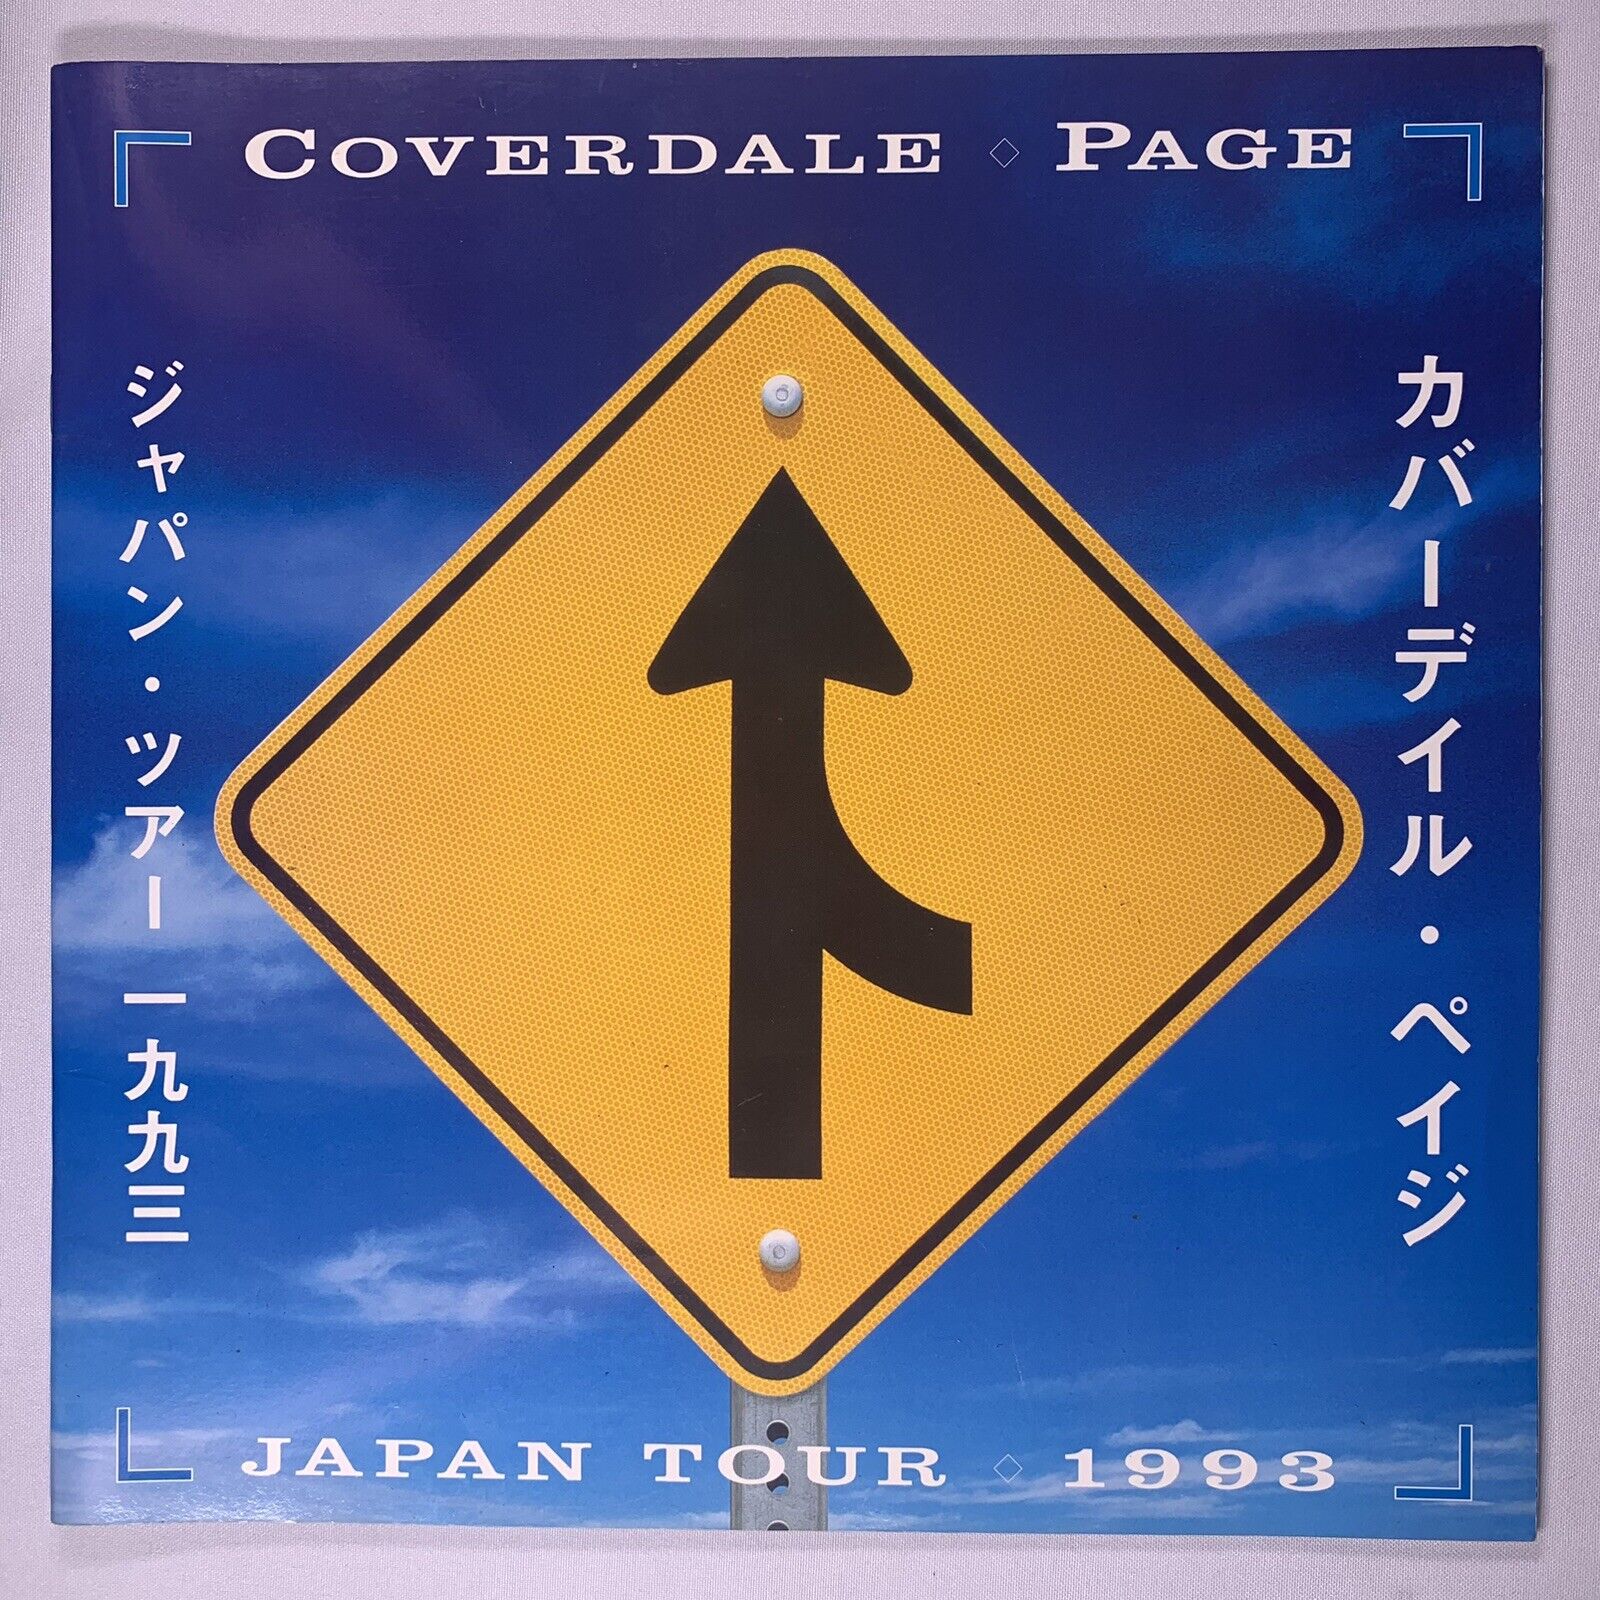 Led Zeppelin Whitesnake  Program Original  Coverdale Page Japanese Tour 1993